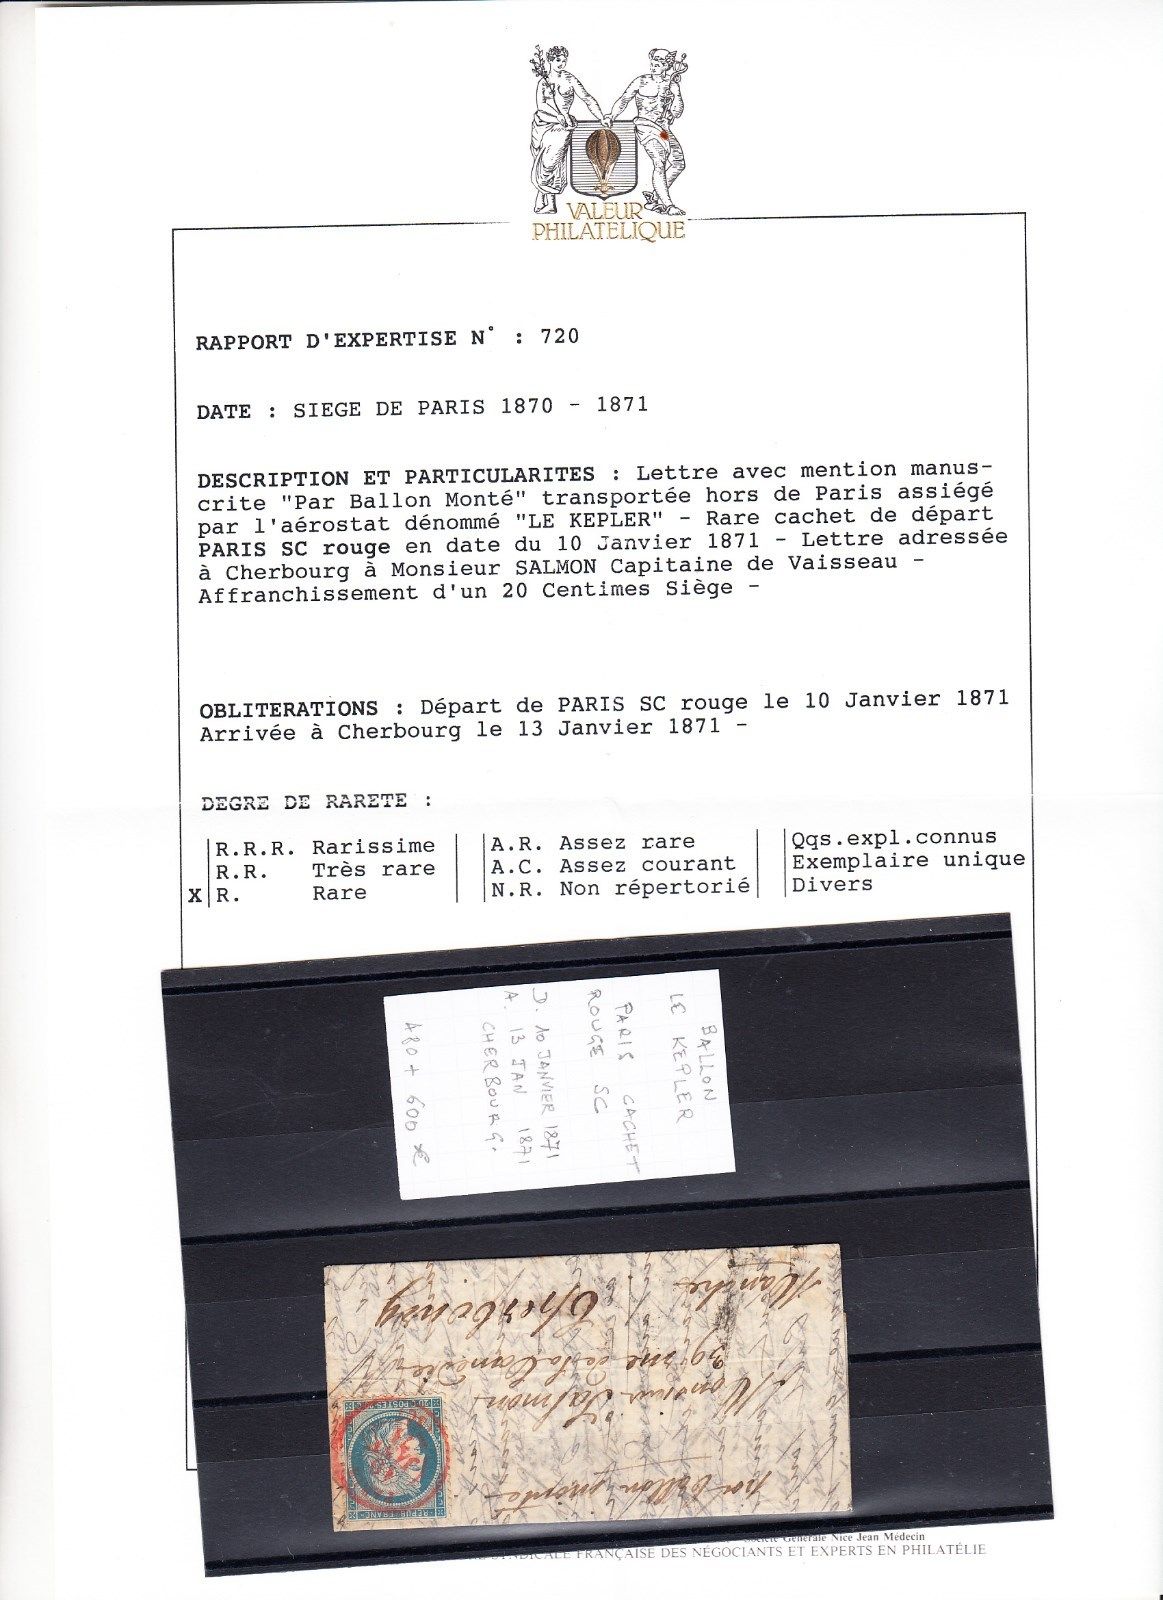 FRANCE  BALLON MONTE LE KEPLER cachet PARIS SC rouge 10011871 certificat